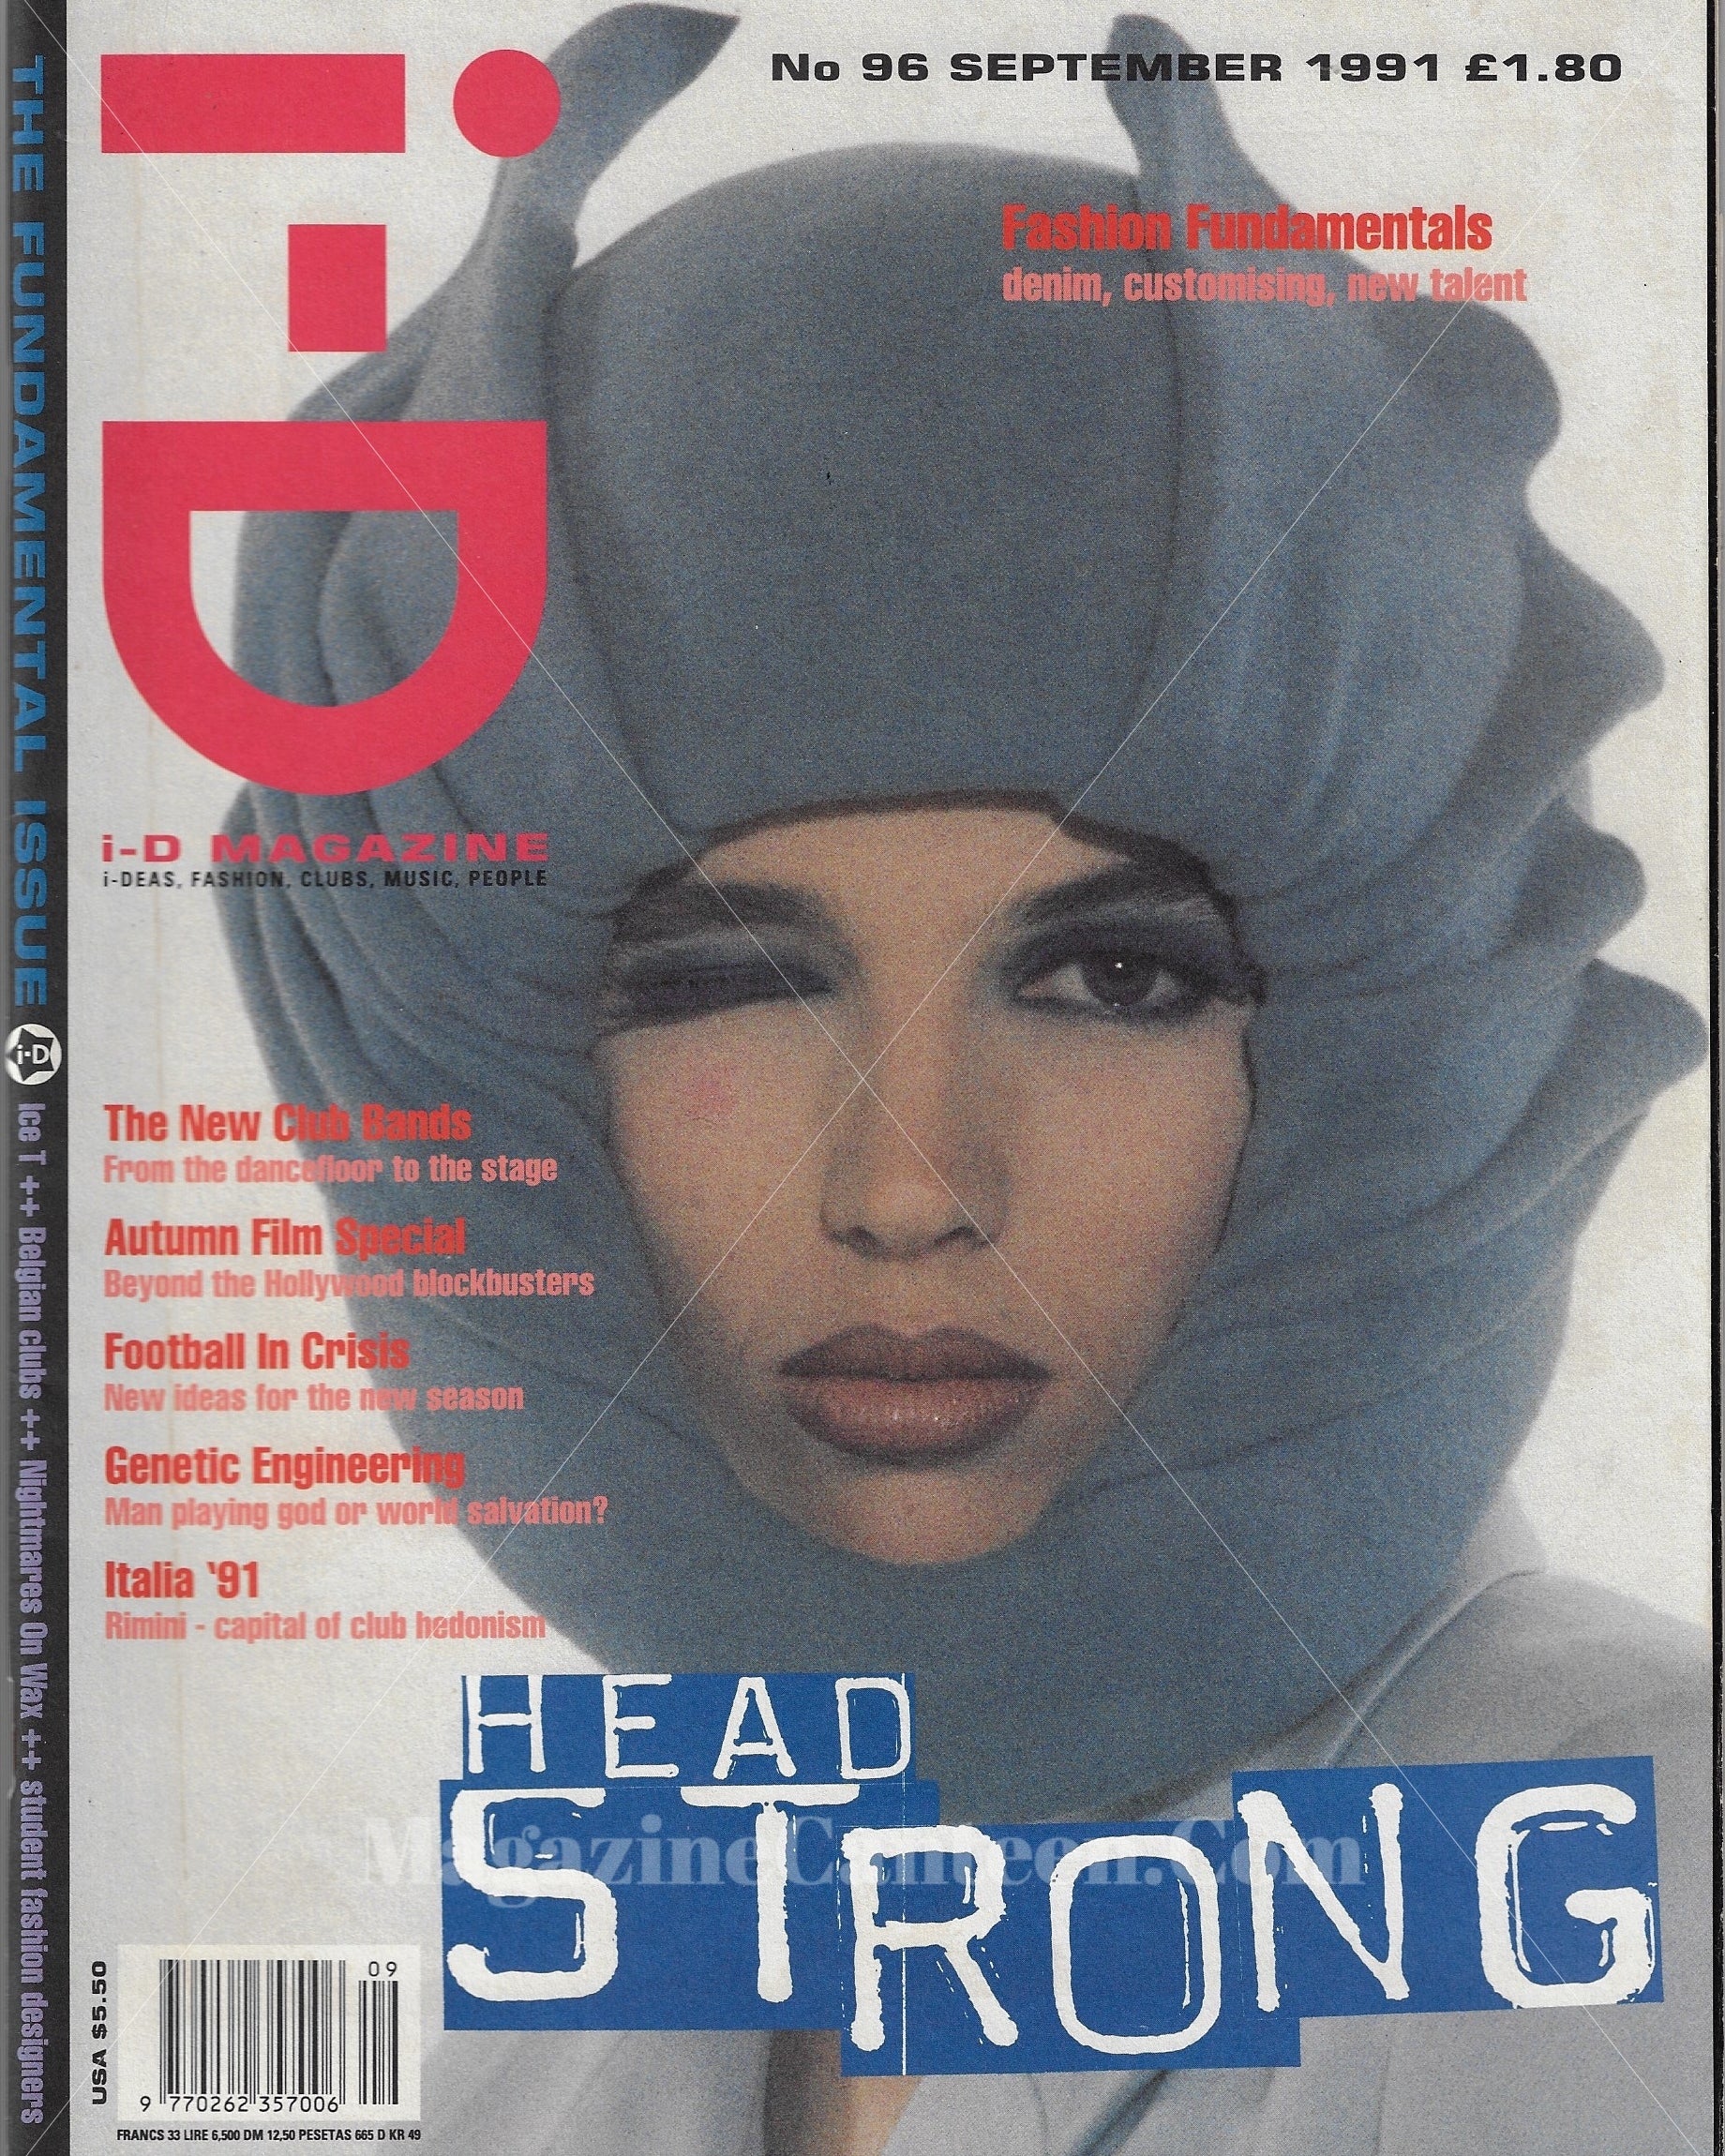 I-D Magazine 96 - Michelle Geddes 1991